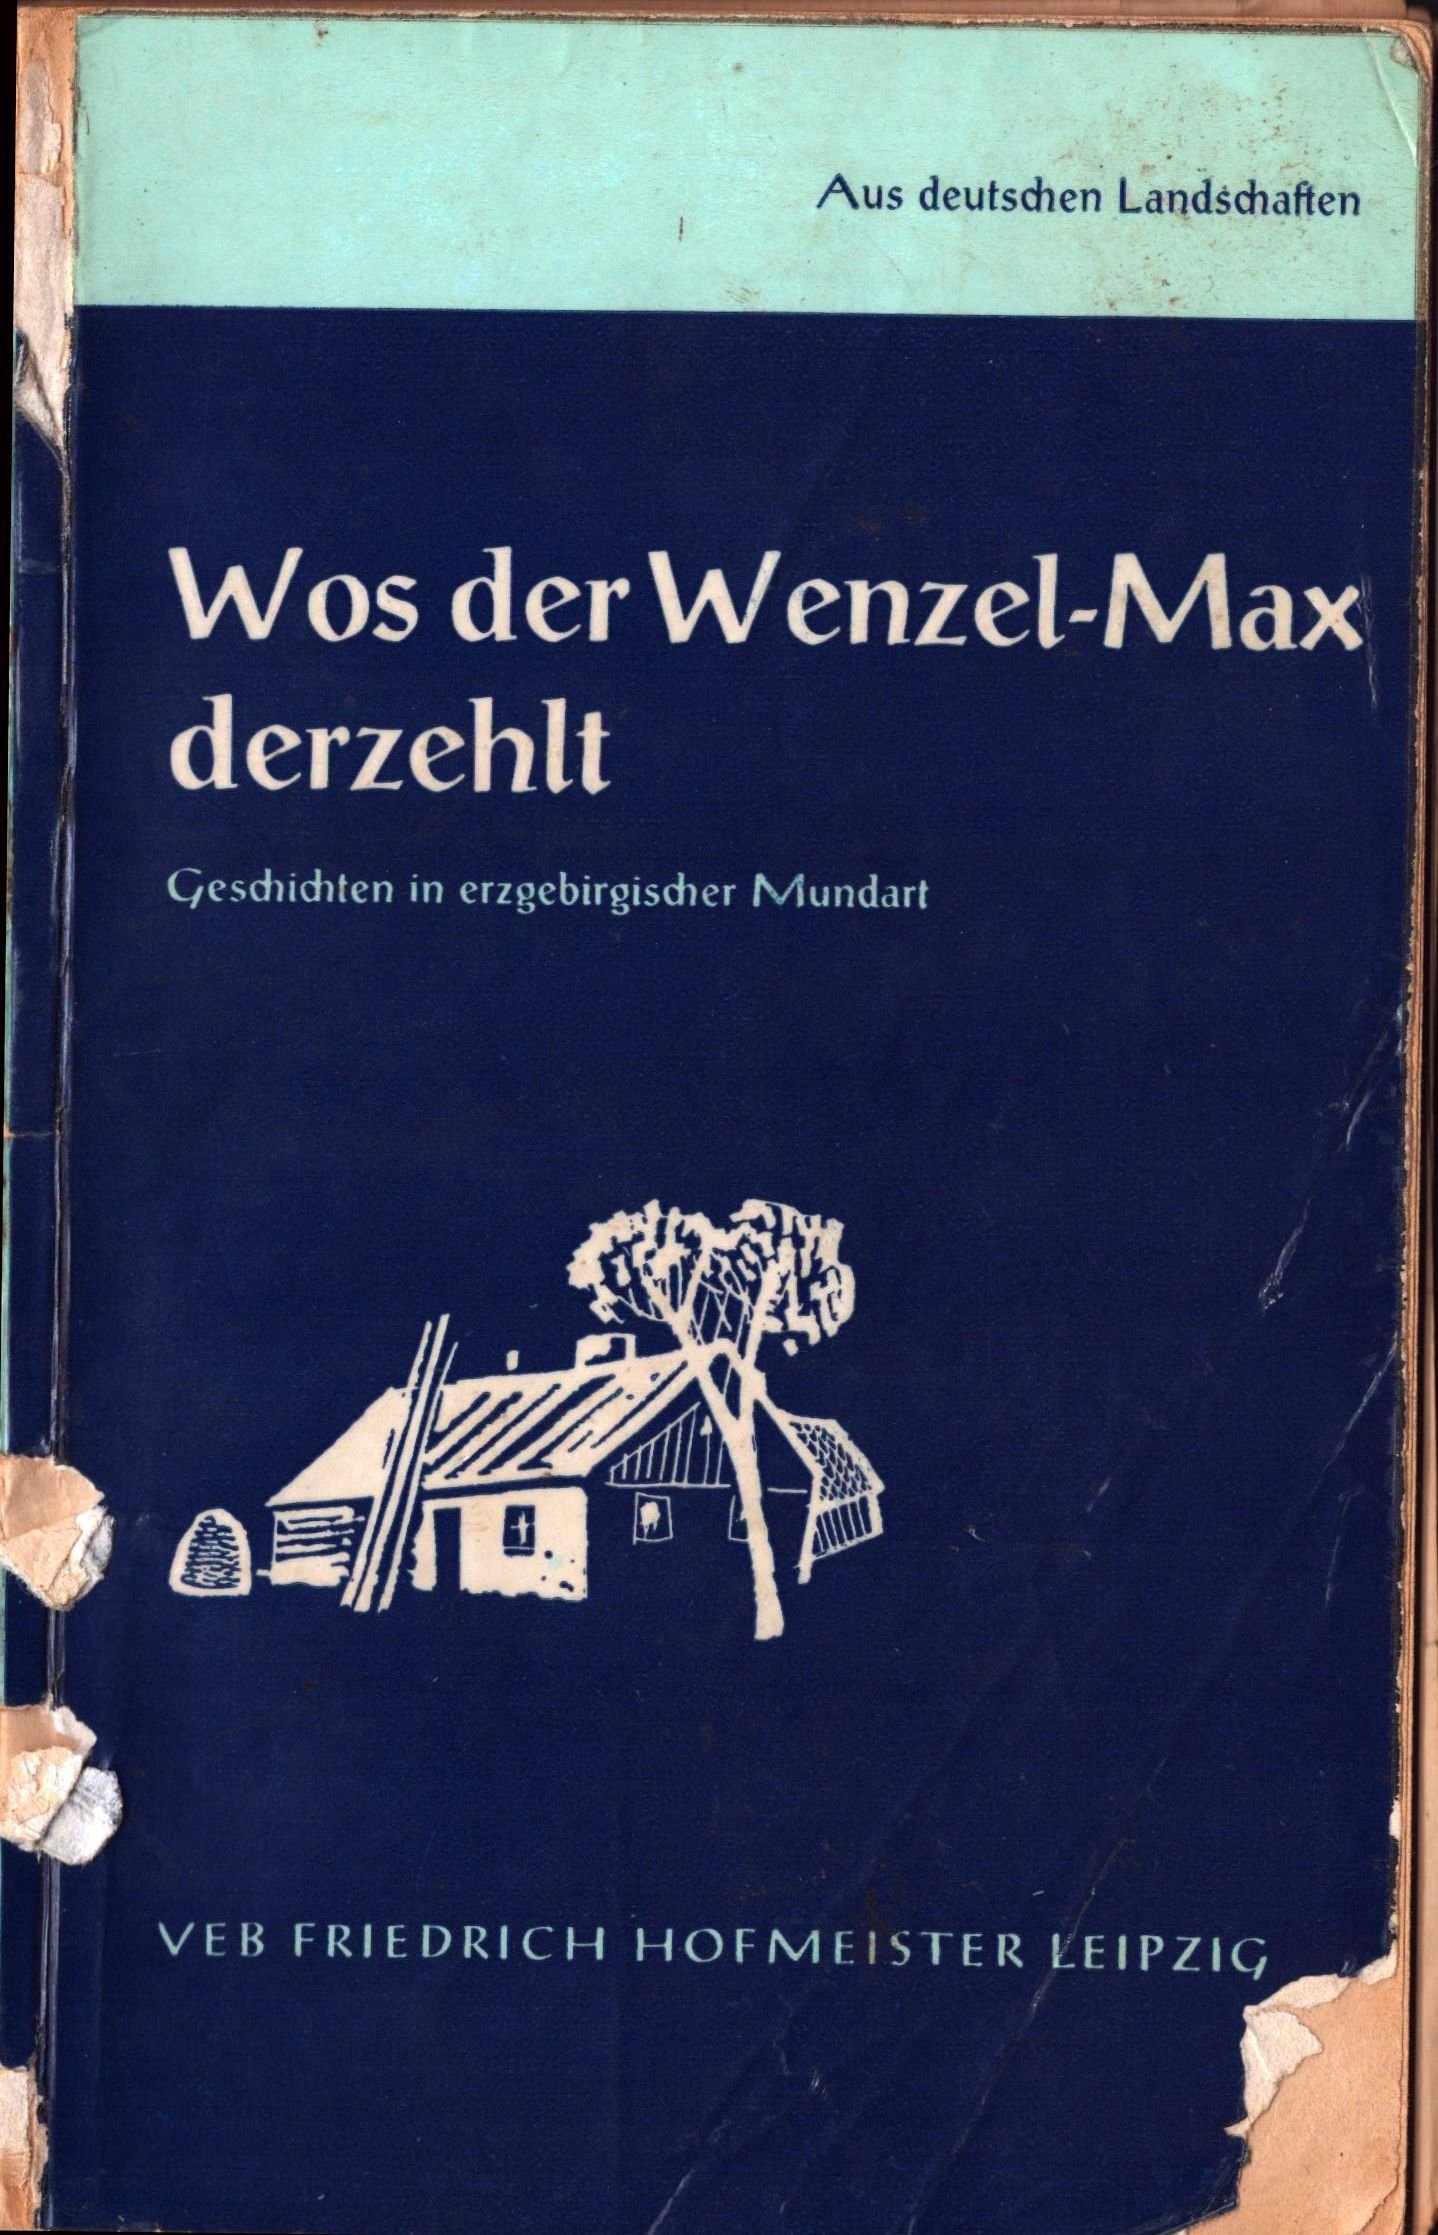 Wos der Wenzel-Max derzehlt. Eine Auswahl von Schriften in erzgebirgischer Mundart (Archiv SAXONIA-FREIBERG-STIFTUNG CC BY-NC-SA)